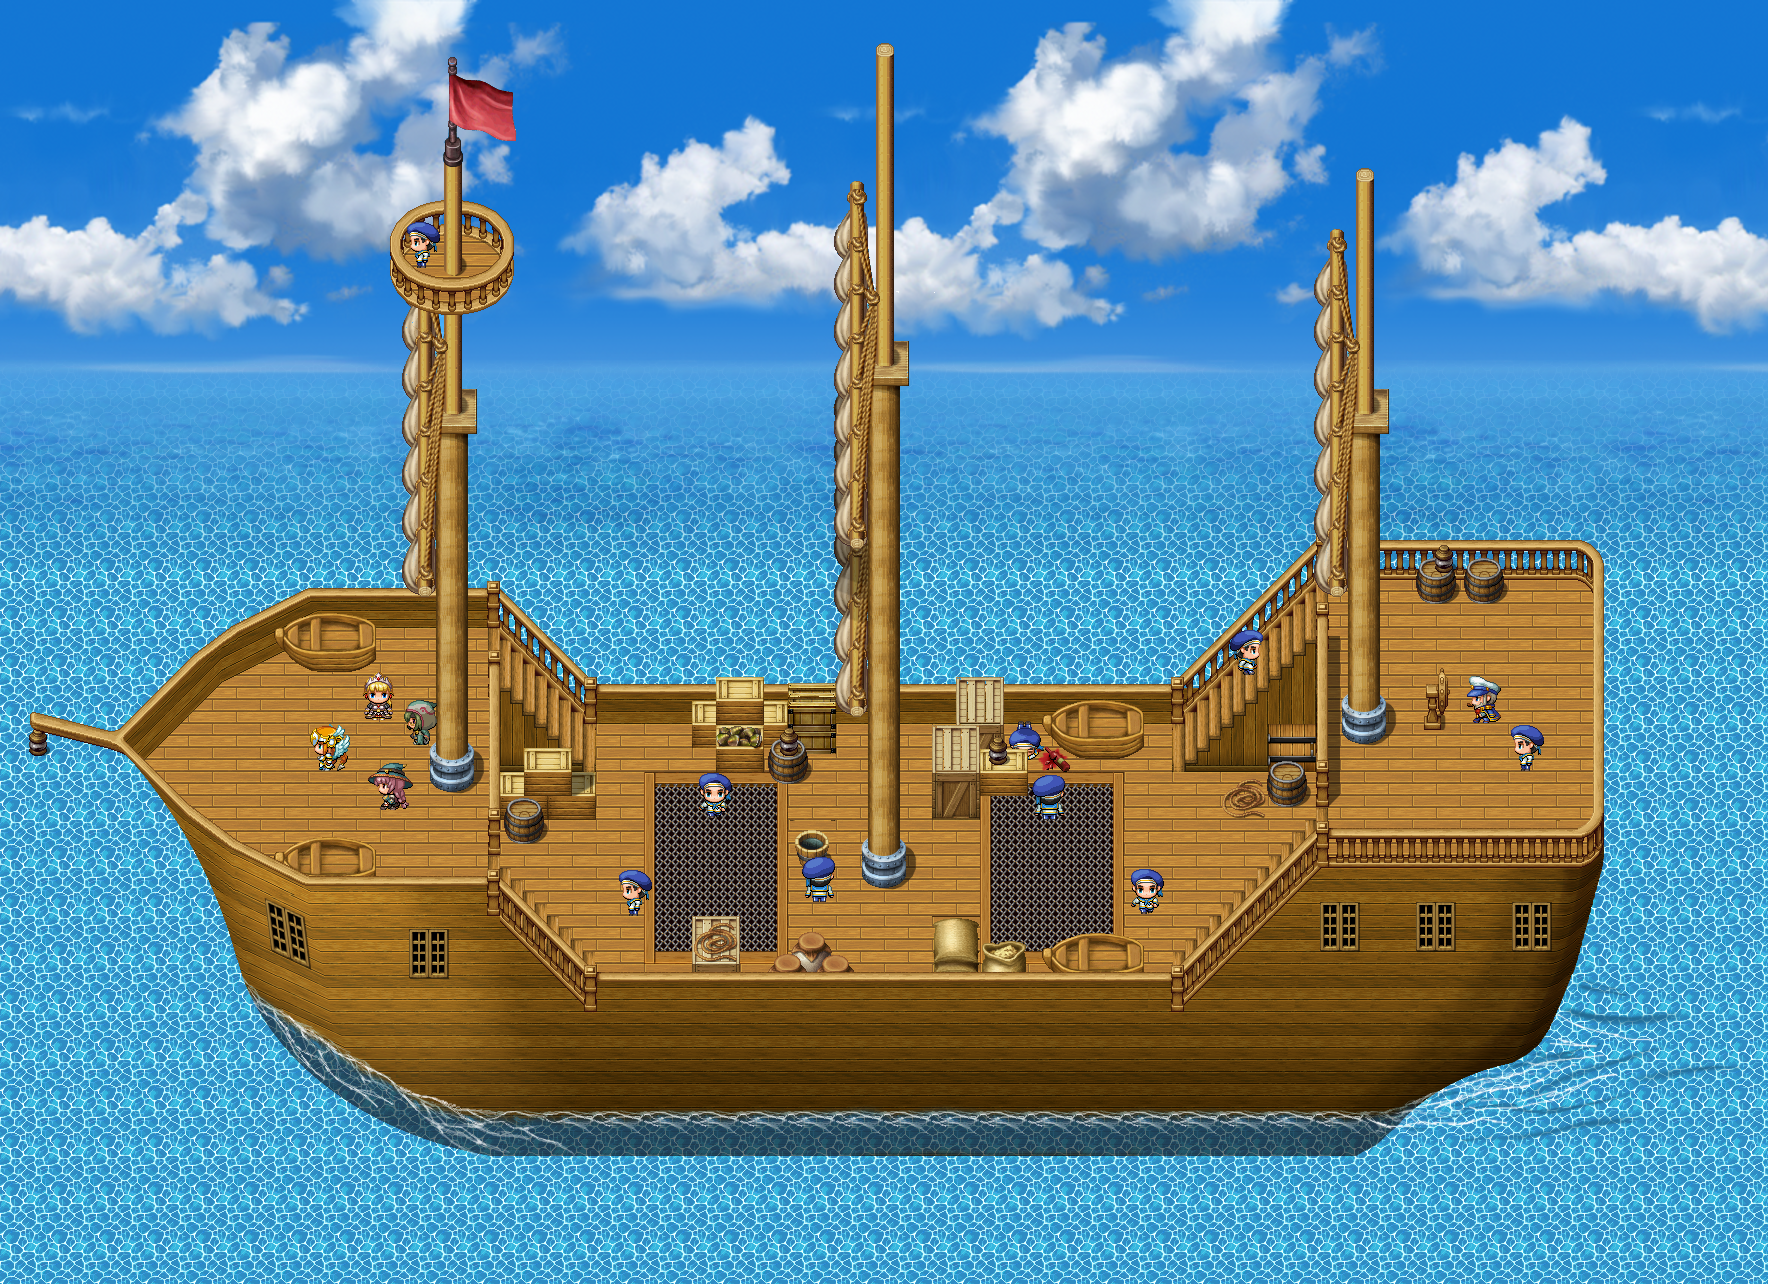 RPG maker тайлсеты корабль. RPG maker MV корабль. Тайлсеты корабля для RPG maker MV. Пиксельный корабль. Игра создавать корабли